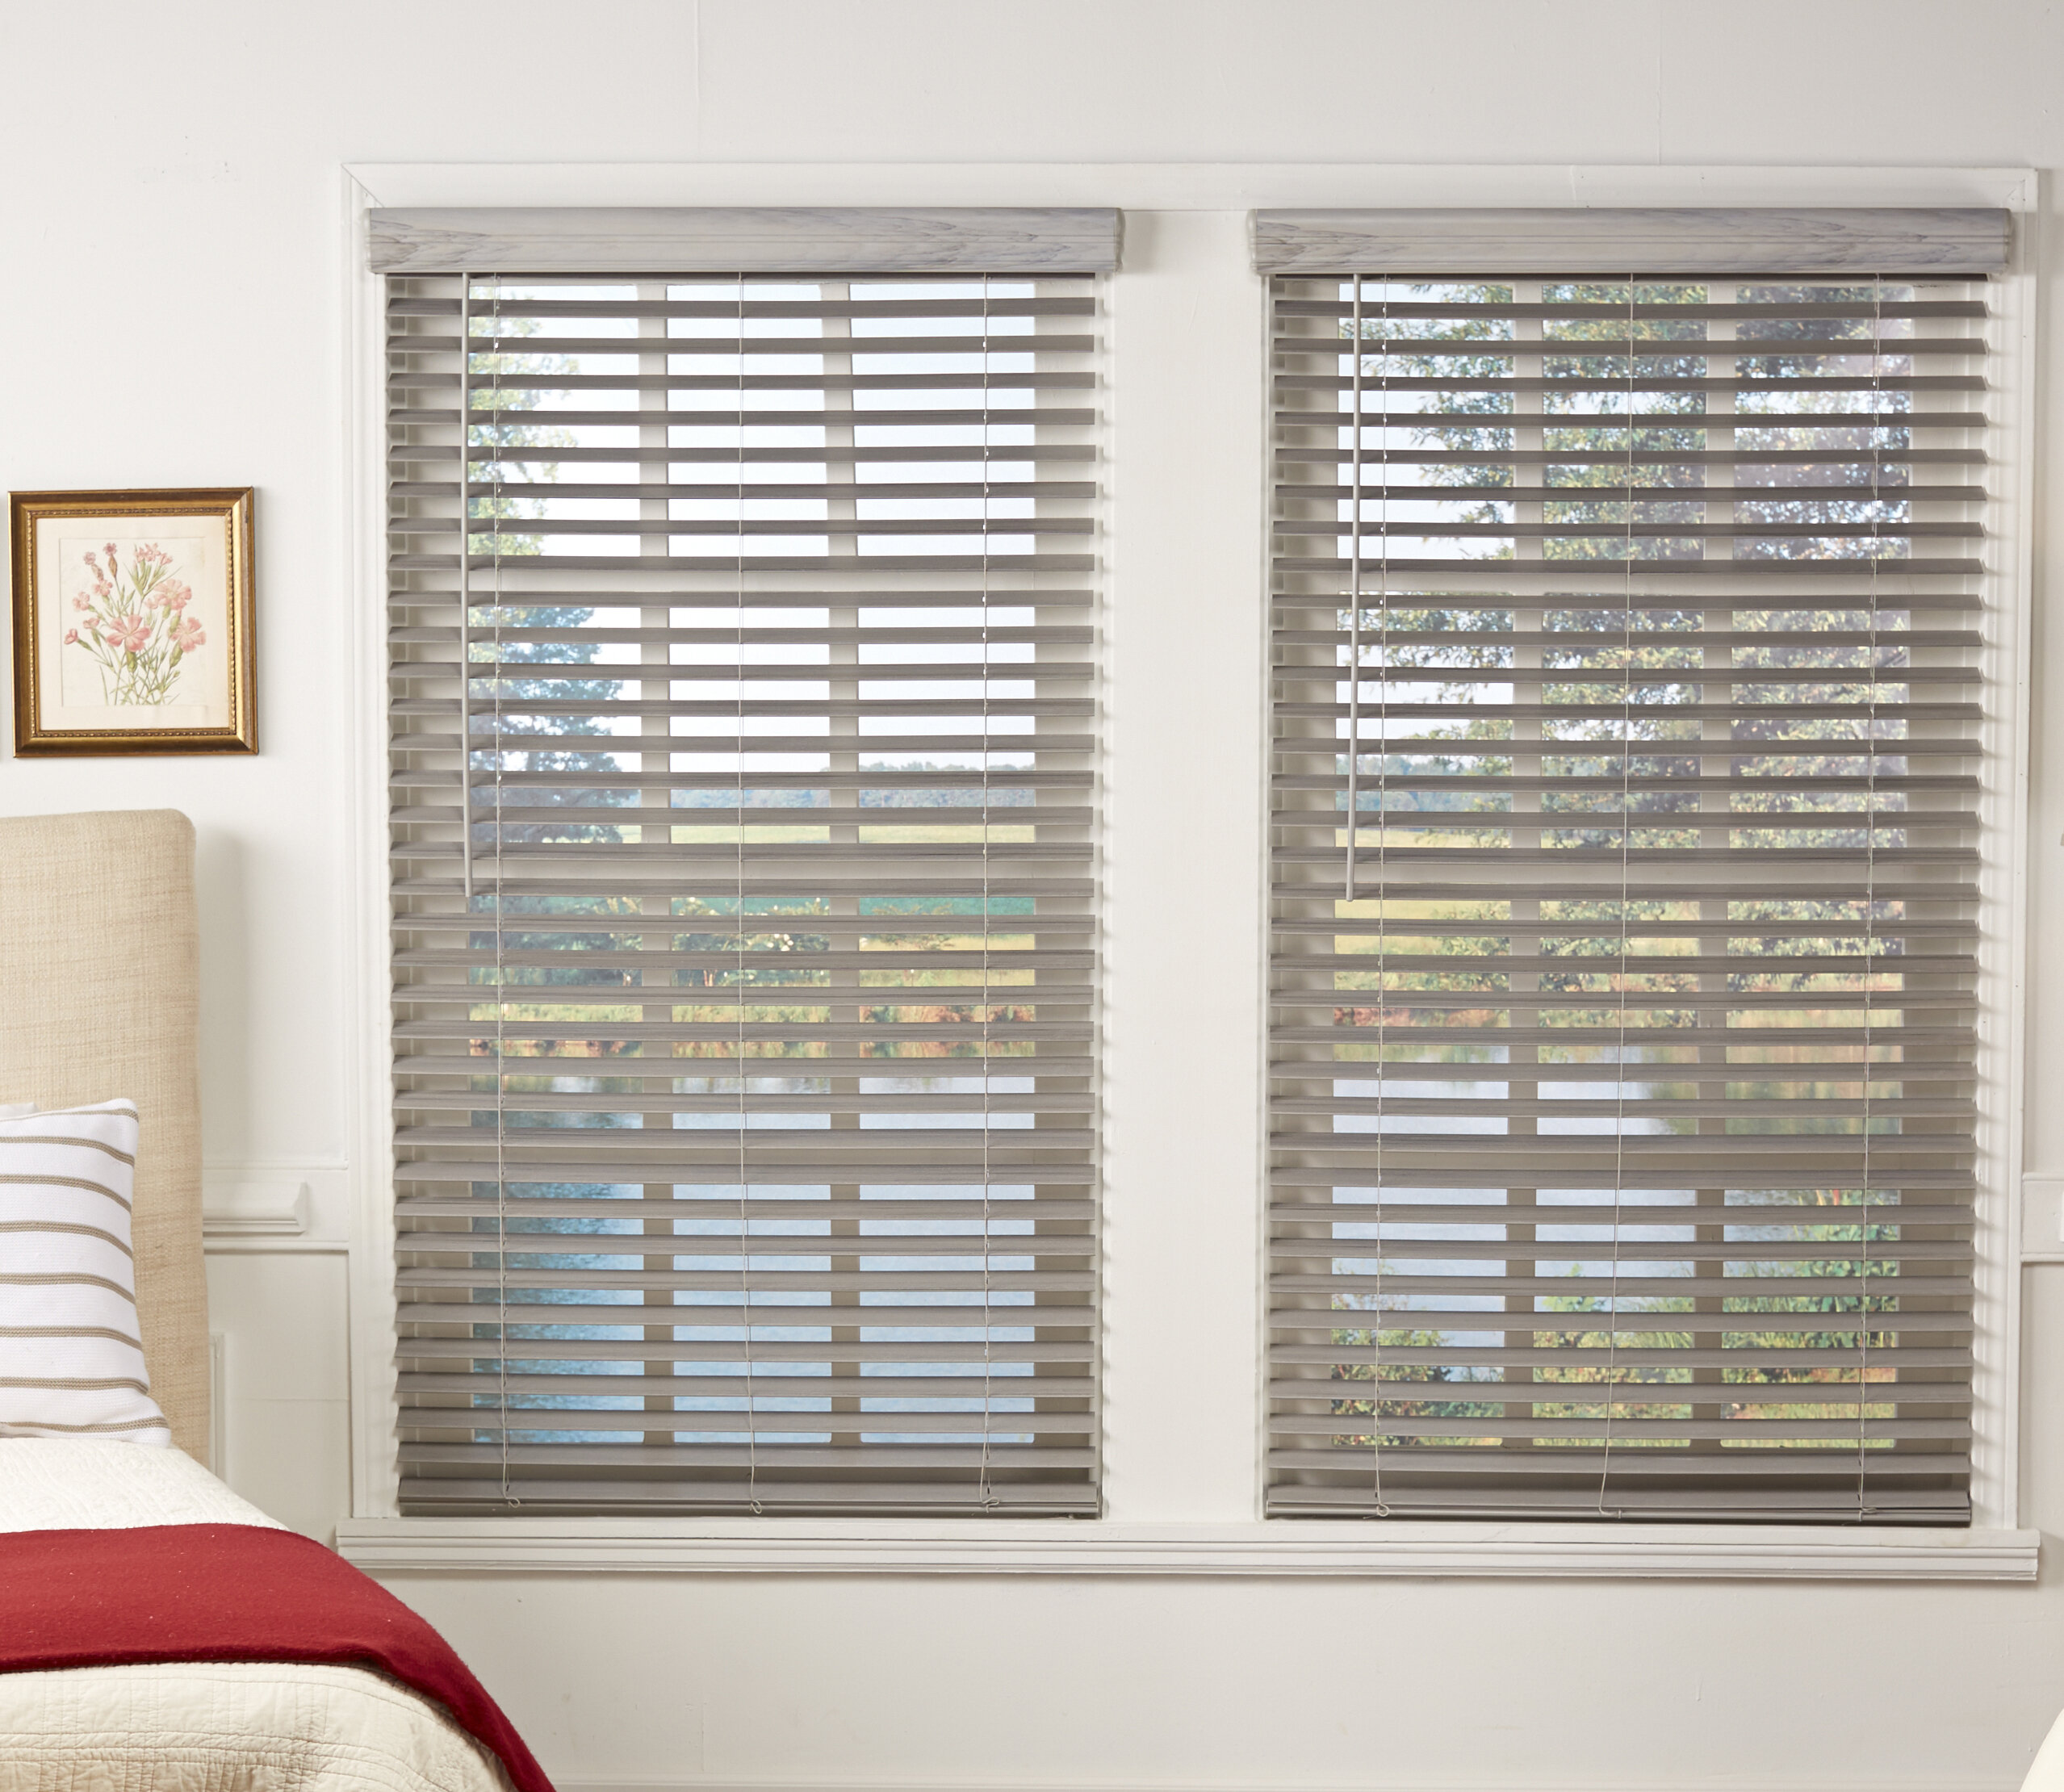 PVC/Wooden Venetian Blind Window Blinds White/Grey Bedroom Living Room Office